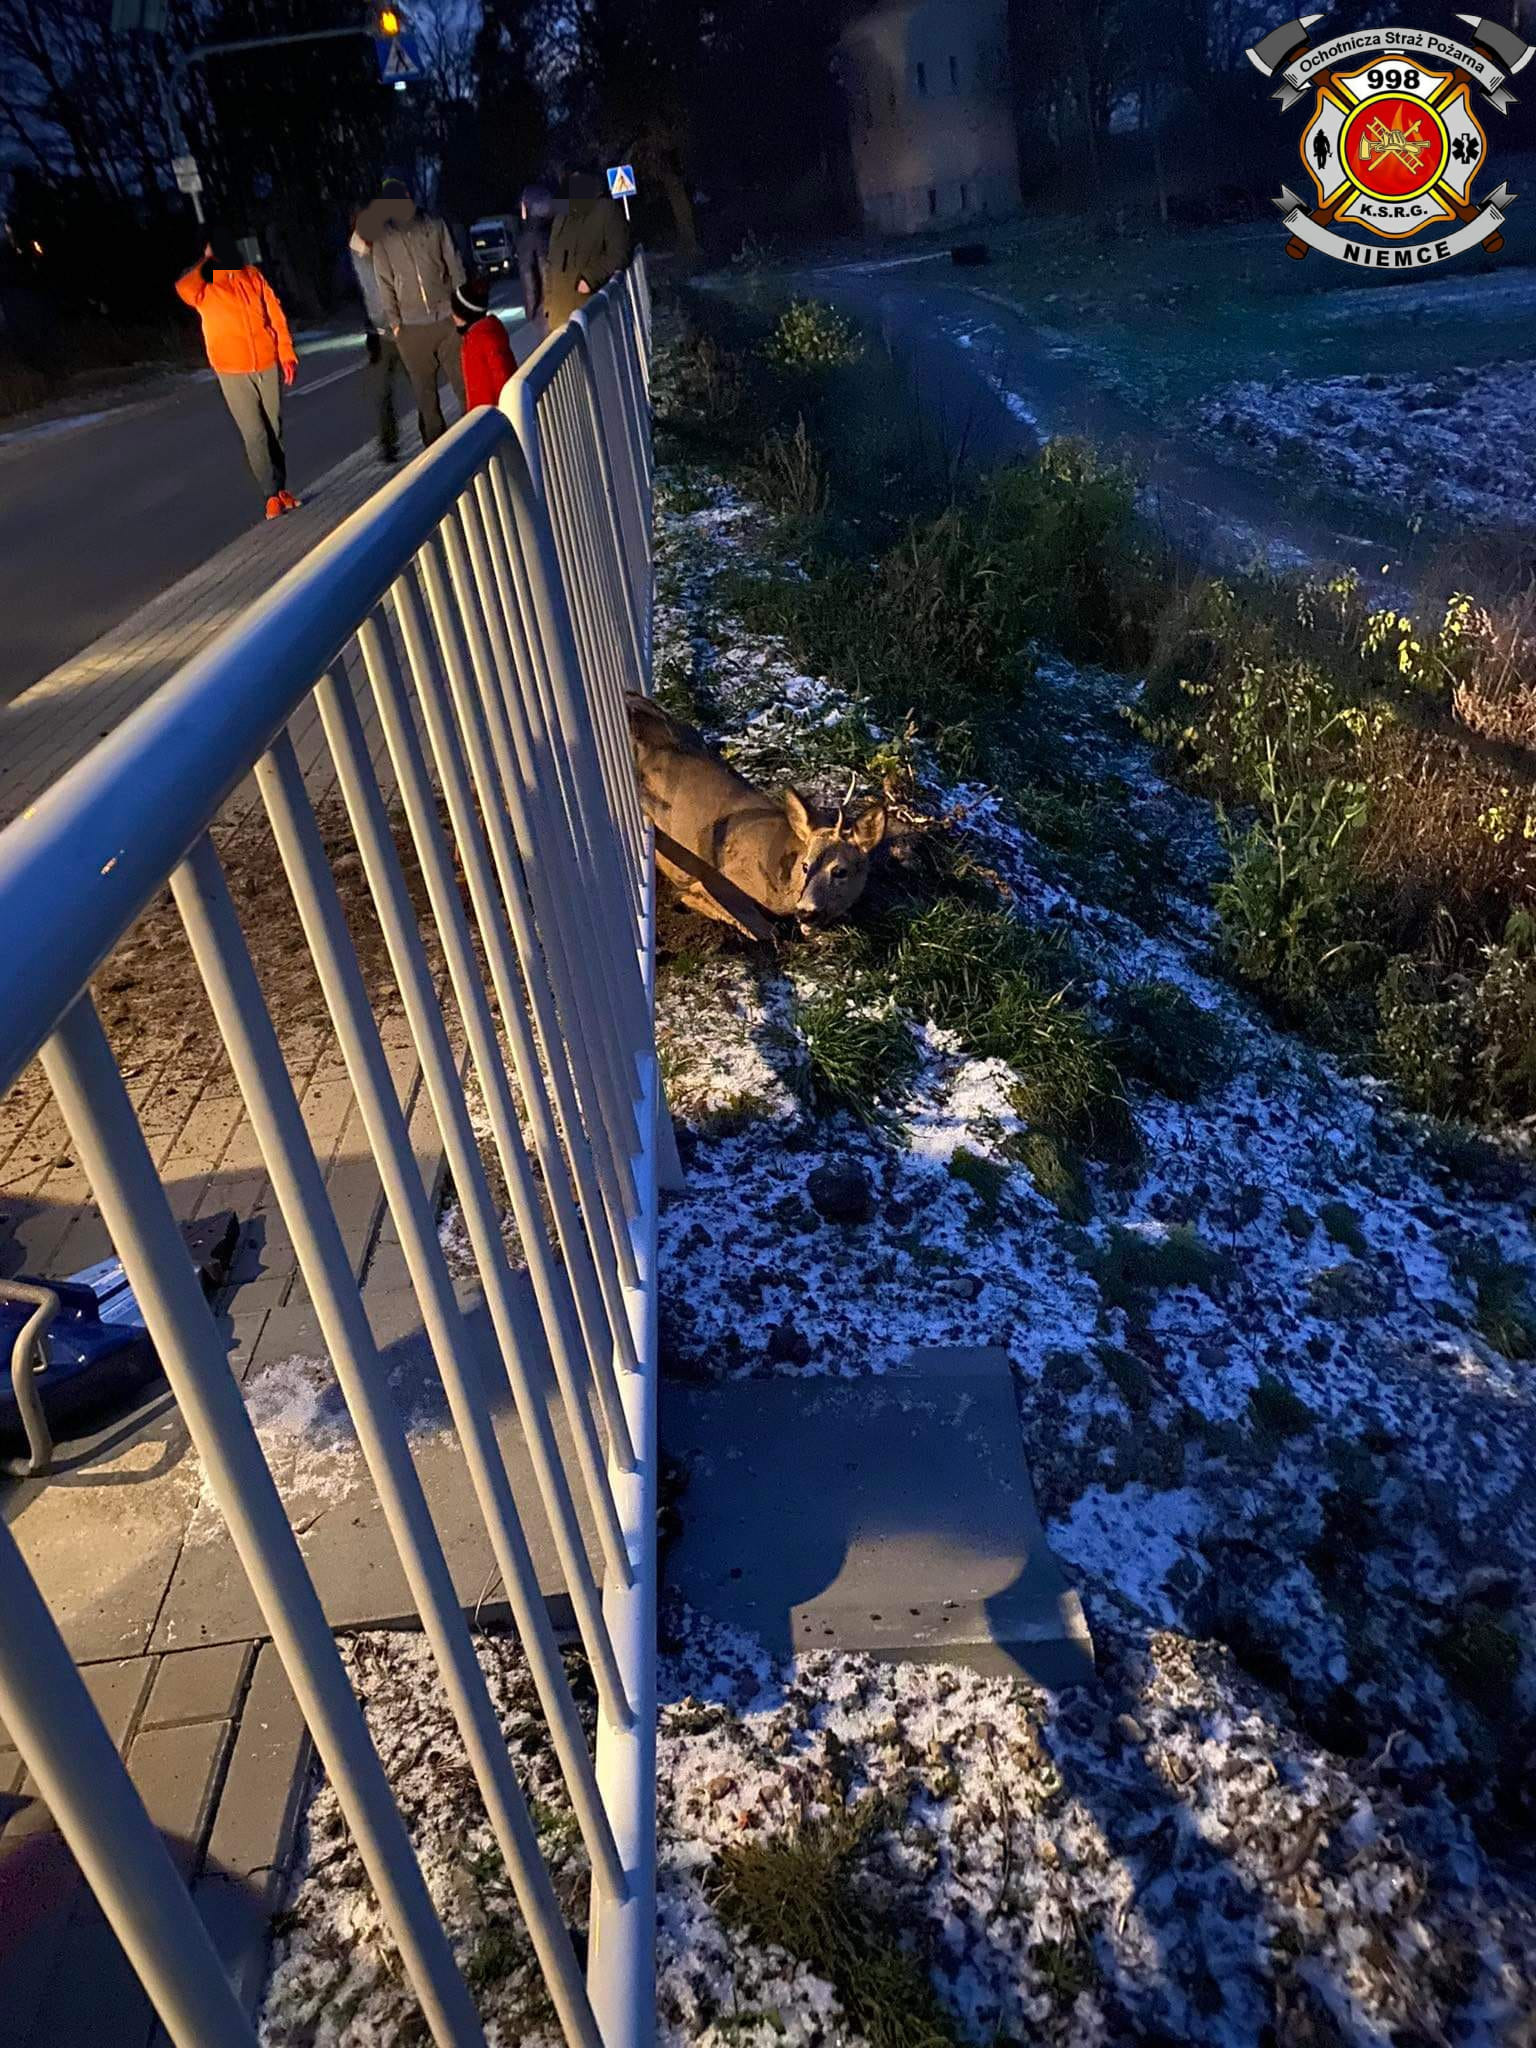 Strażacy uratowali koziołka sarny uwięzionego pomiędzy szczebelkami metalowej barierki (zdjęcia)